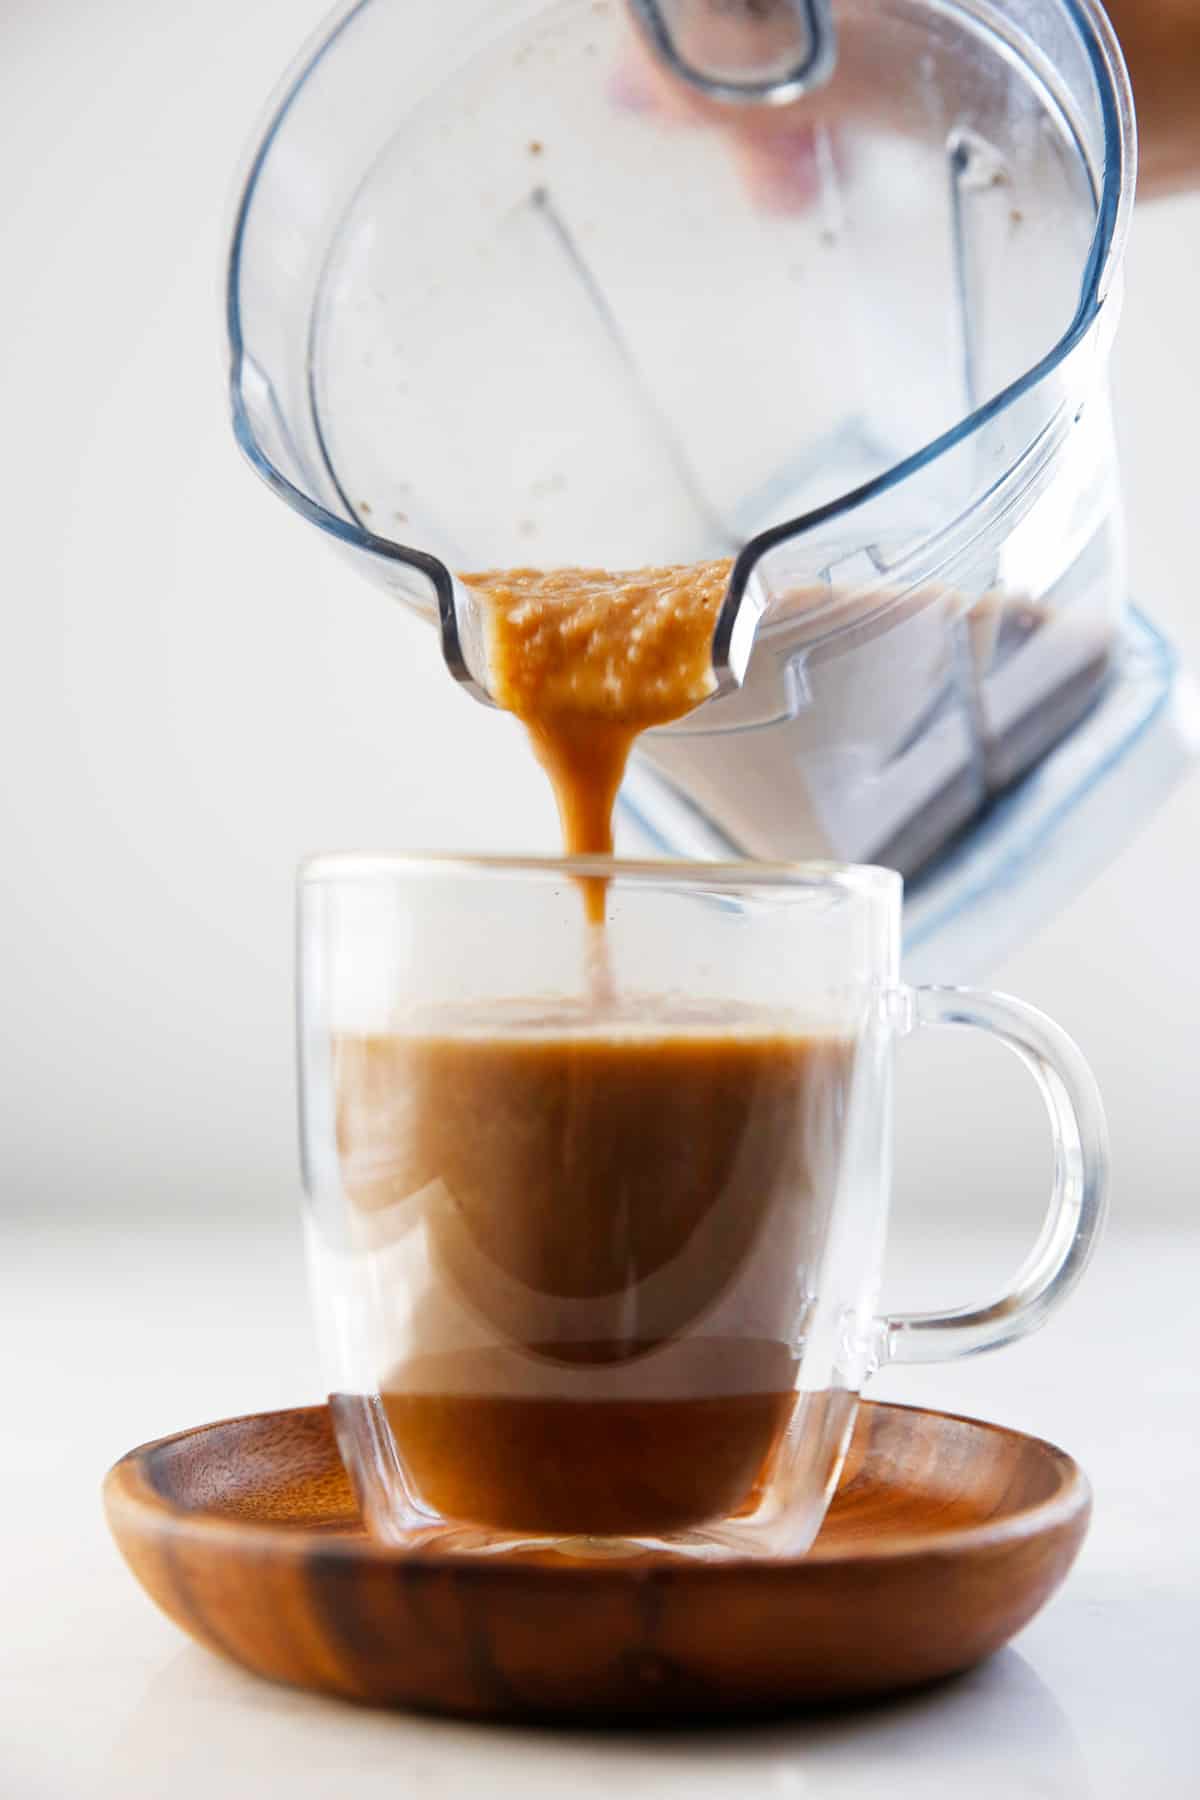 آب قهوه در دستور العمل لیوانی ریخته می شود